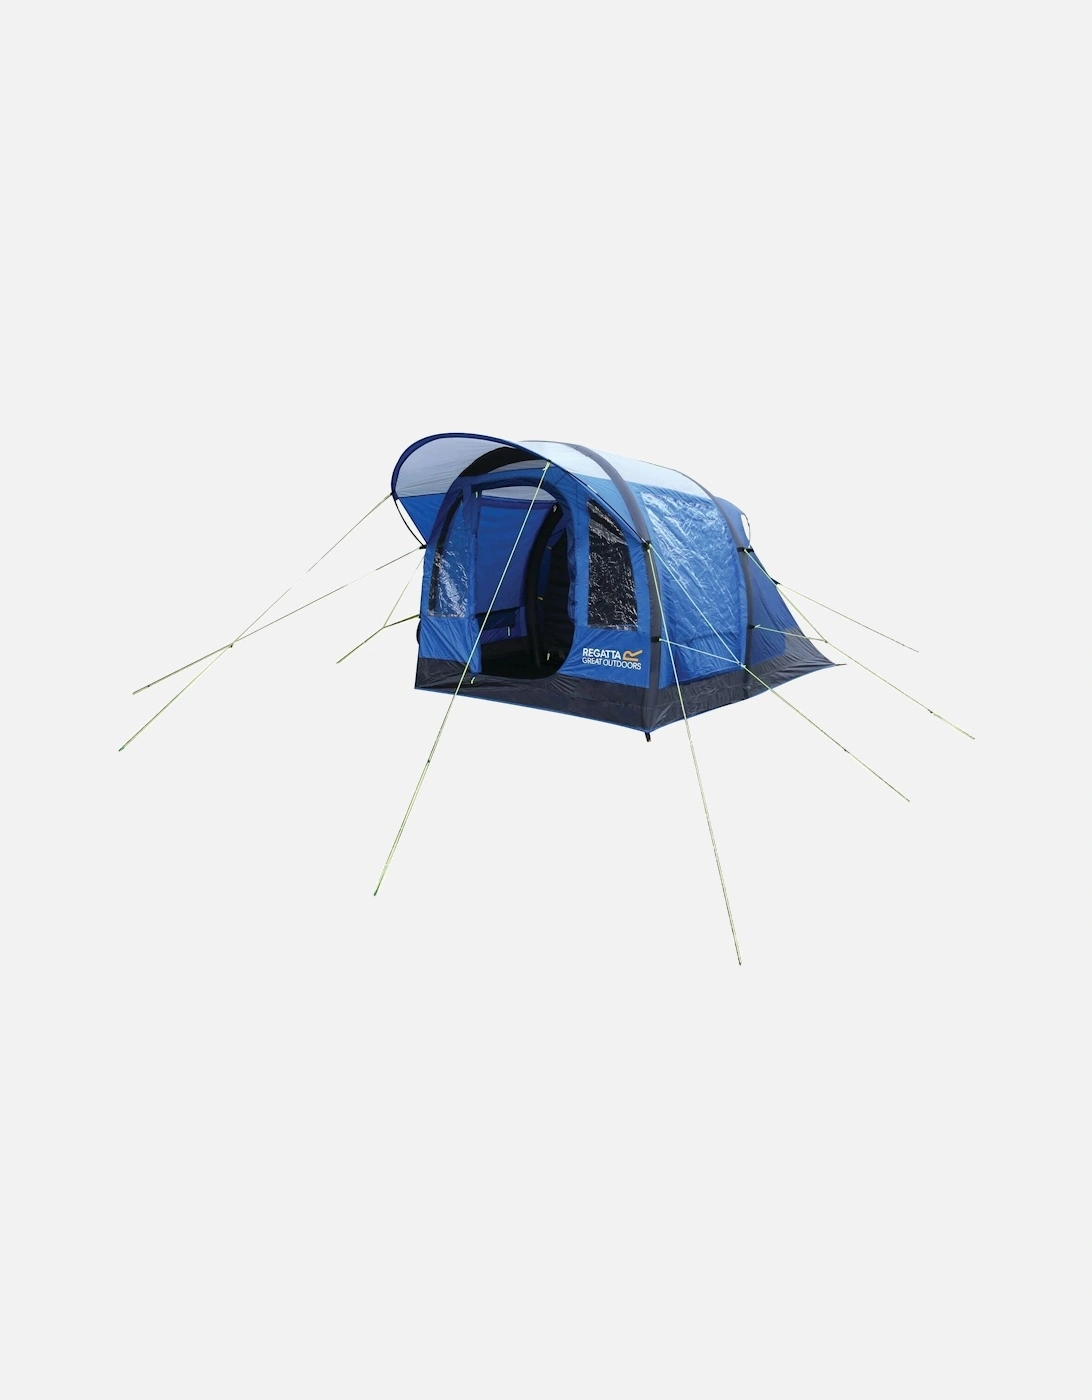 Kolima 3-Man Inflatable Family Tent - Laser/Ebony - One Size, 8 of 7